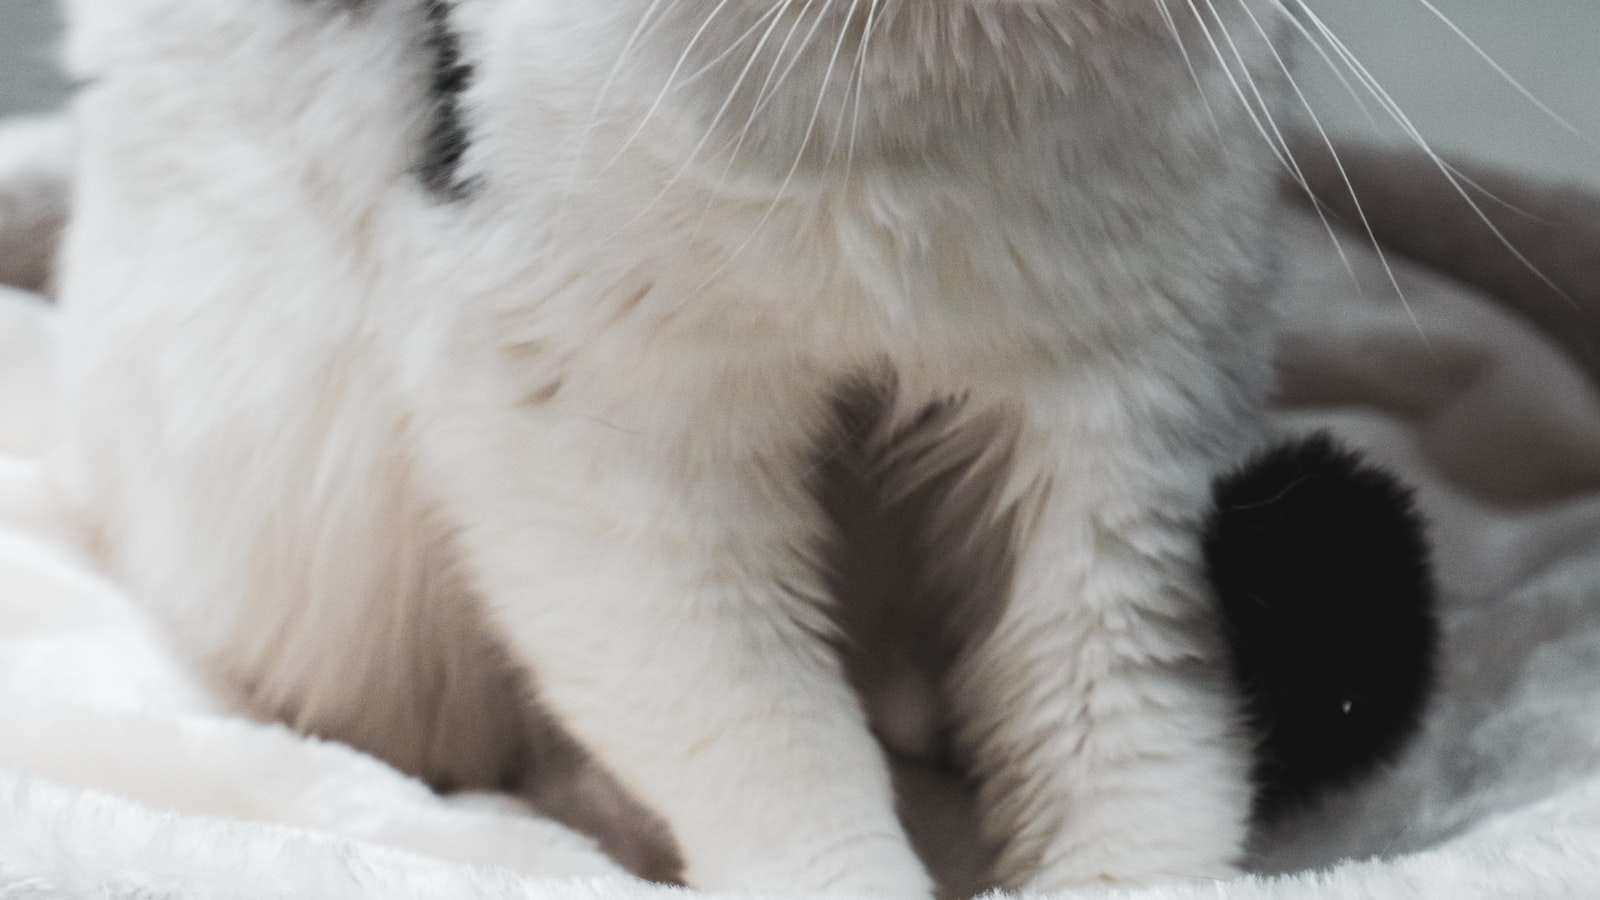 Voeding op maat: adviezen van dierenartsen en voedingsspecialisten voor jouw kat